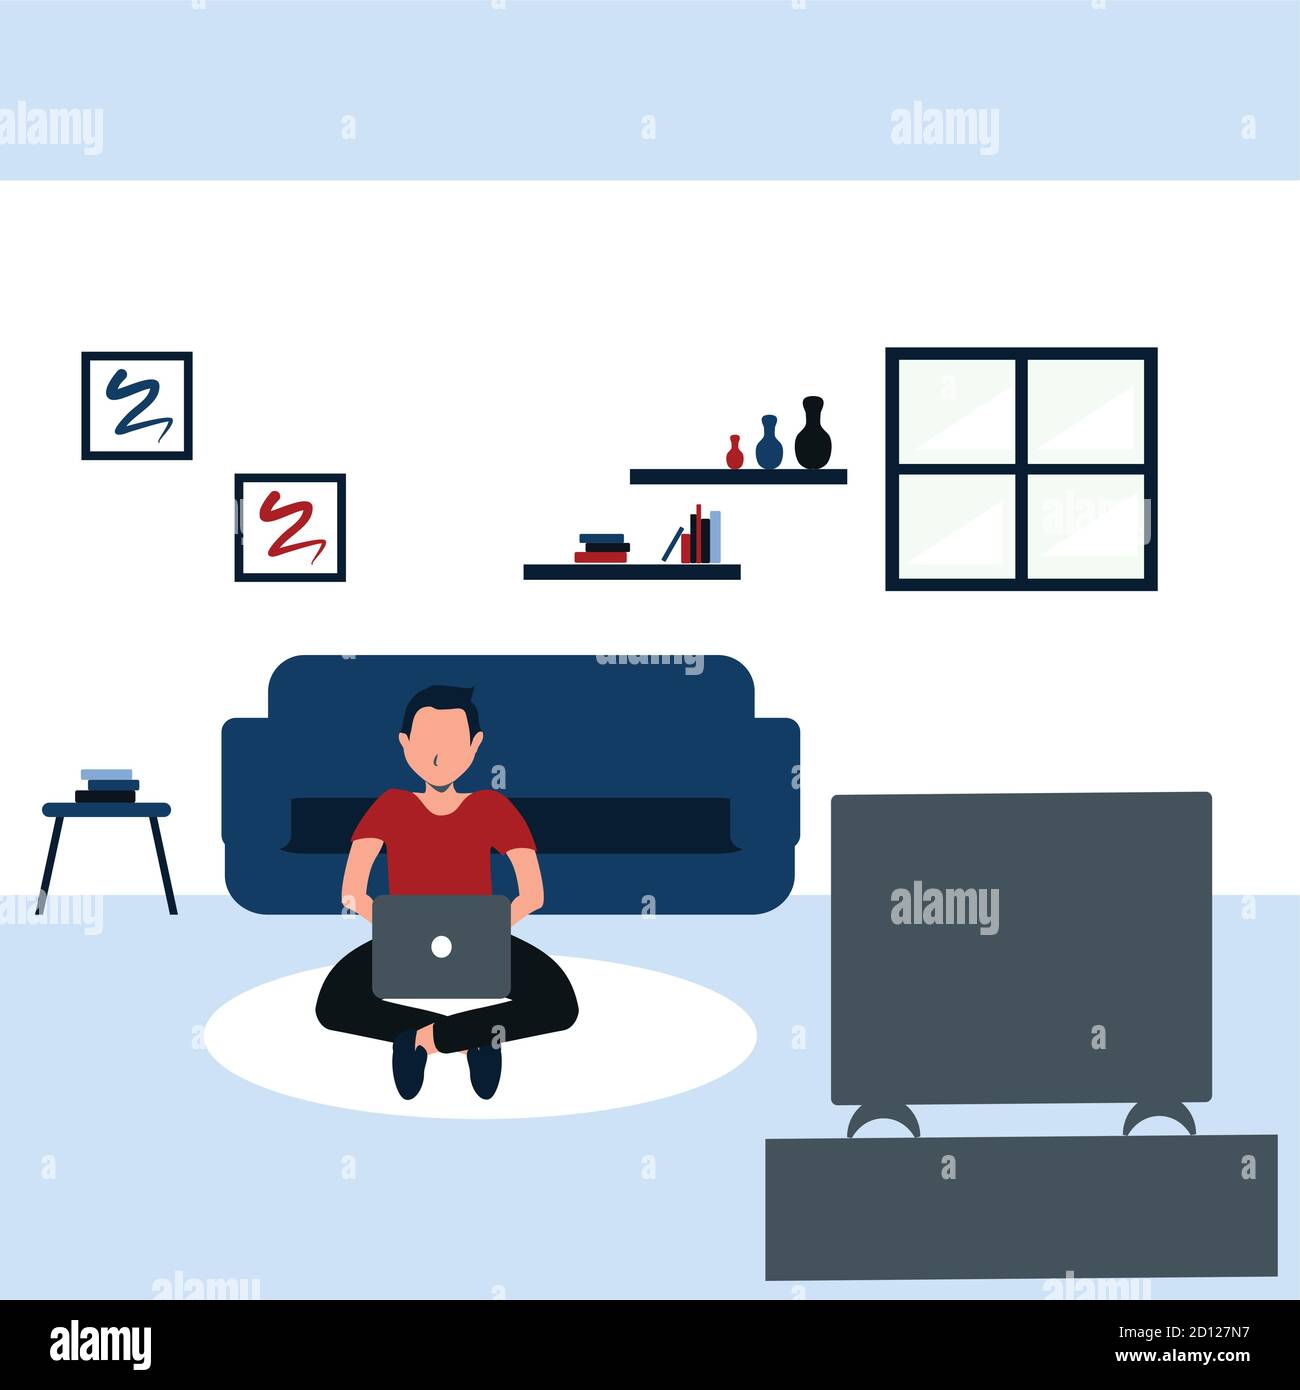 Beim Lernen und Fernsehen sitzt ein junger Mann lässig auf dem Teppich in seinem Lieblingswohnzimmer - bunte, flache Cartoons Illustrationen Stock Vektor